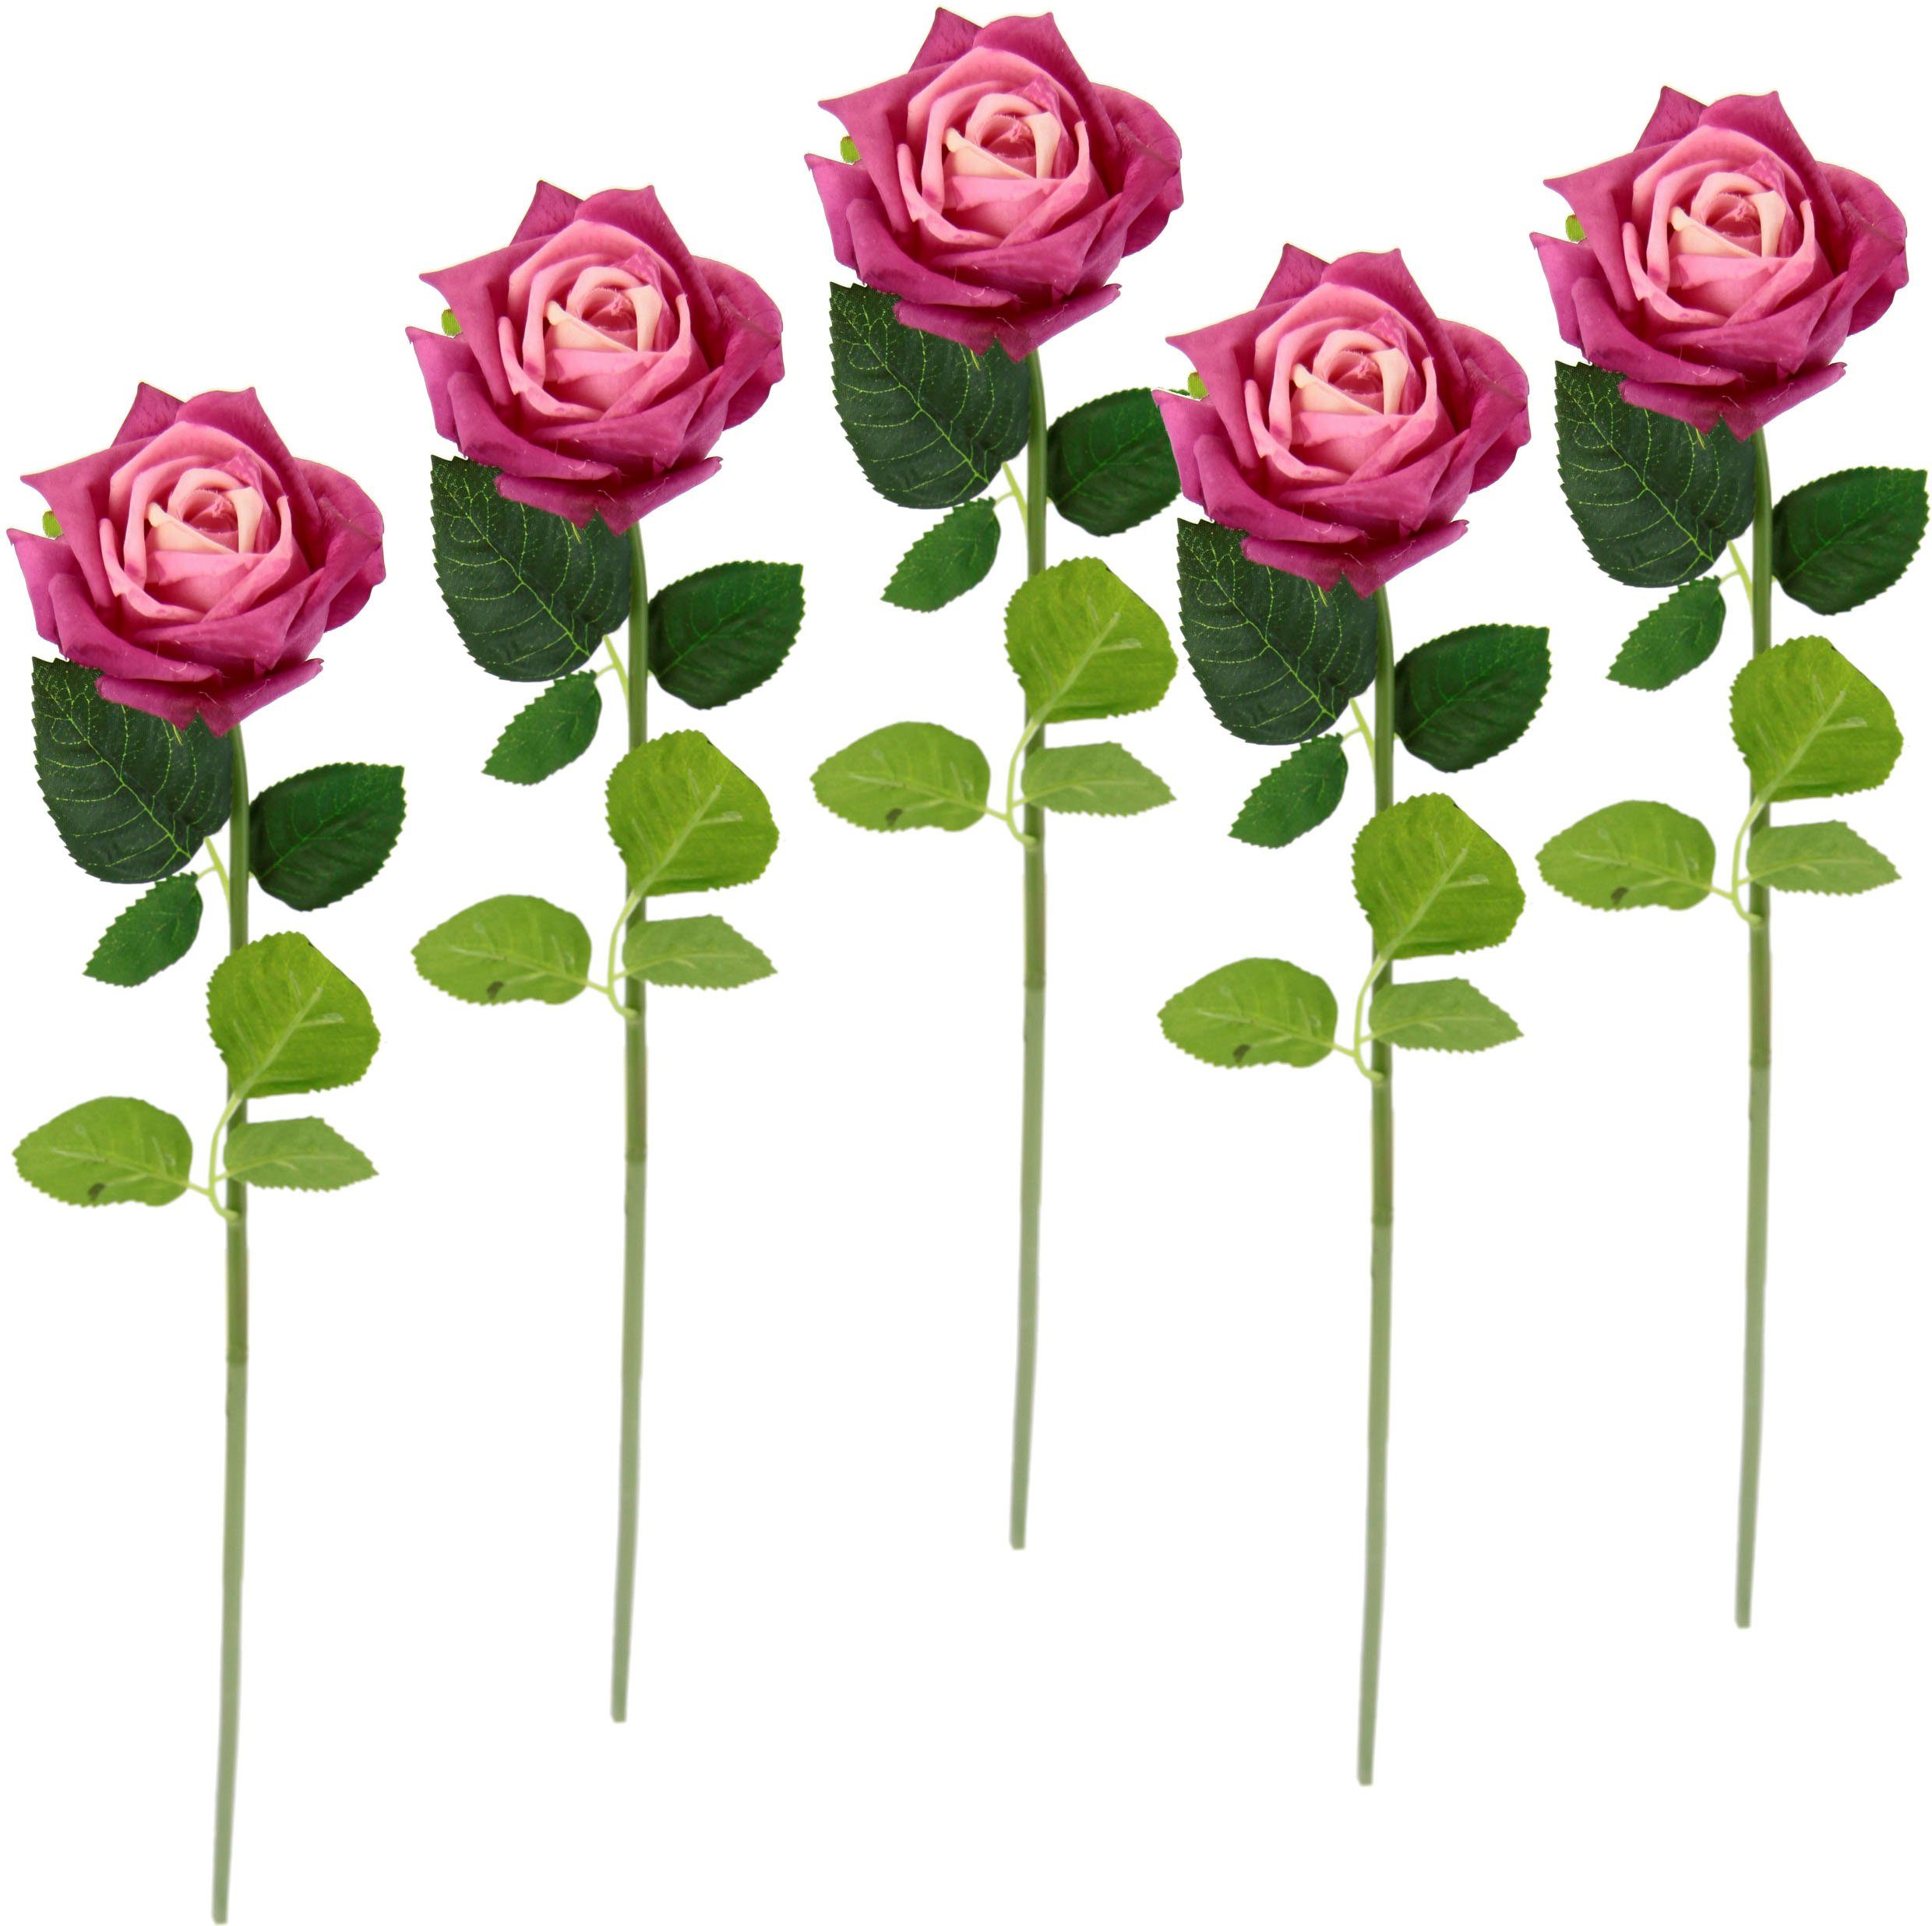 Kunstblume Rose, I.GE.A., Höhe 45 cm, 5er Set künstliche Rosen, Seidenrosen, Bouquet, Kunstzweig, Kunstrose pink | Kunstblumen